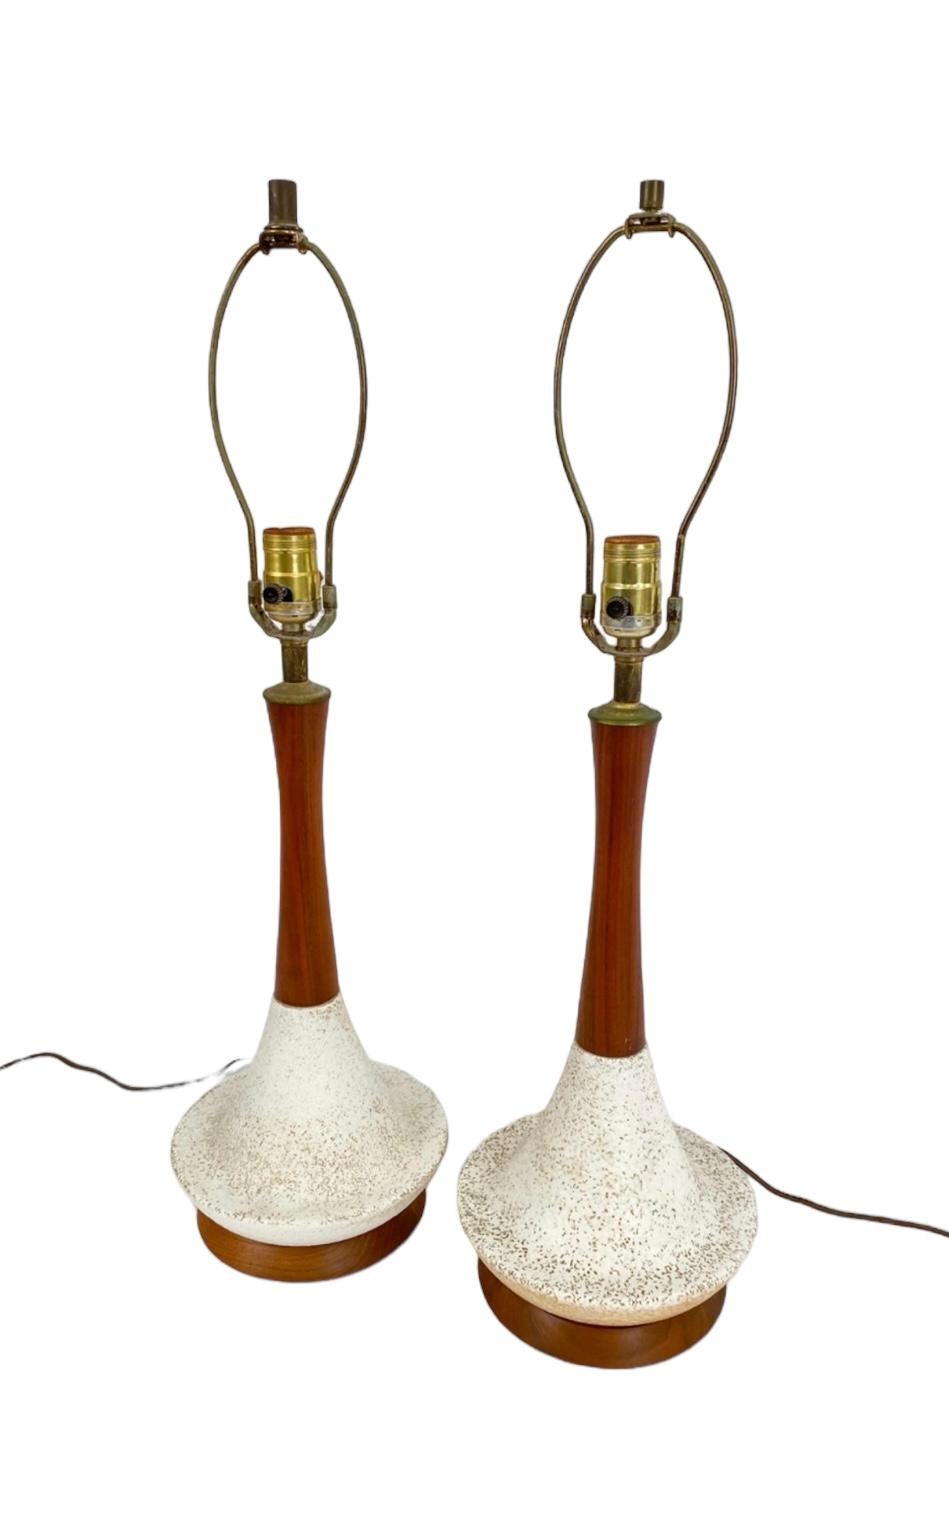 Lampes de table modernes classiques du milieu du siècle. Style scandinave avec une combinaison d'éléments. Élégant col en bois profilé soutenu par une base évasée en céramique mouchetée sur un disque en bois, accompagné d'une quincaillerie en laiton